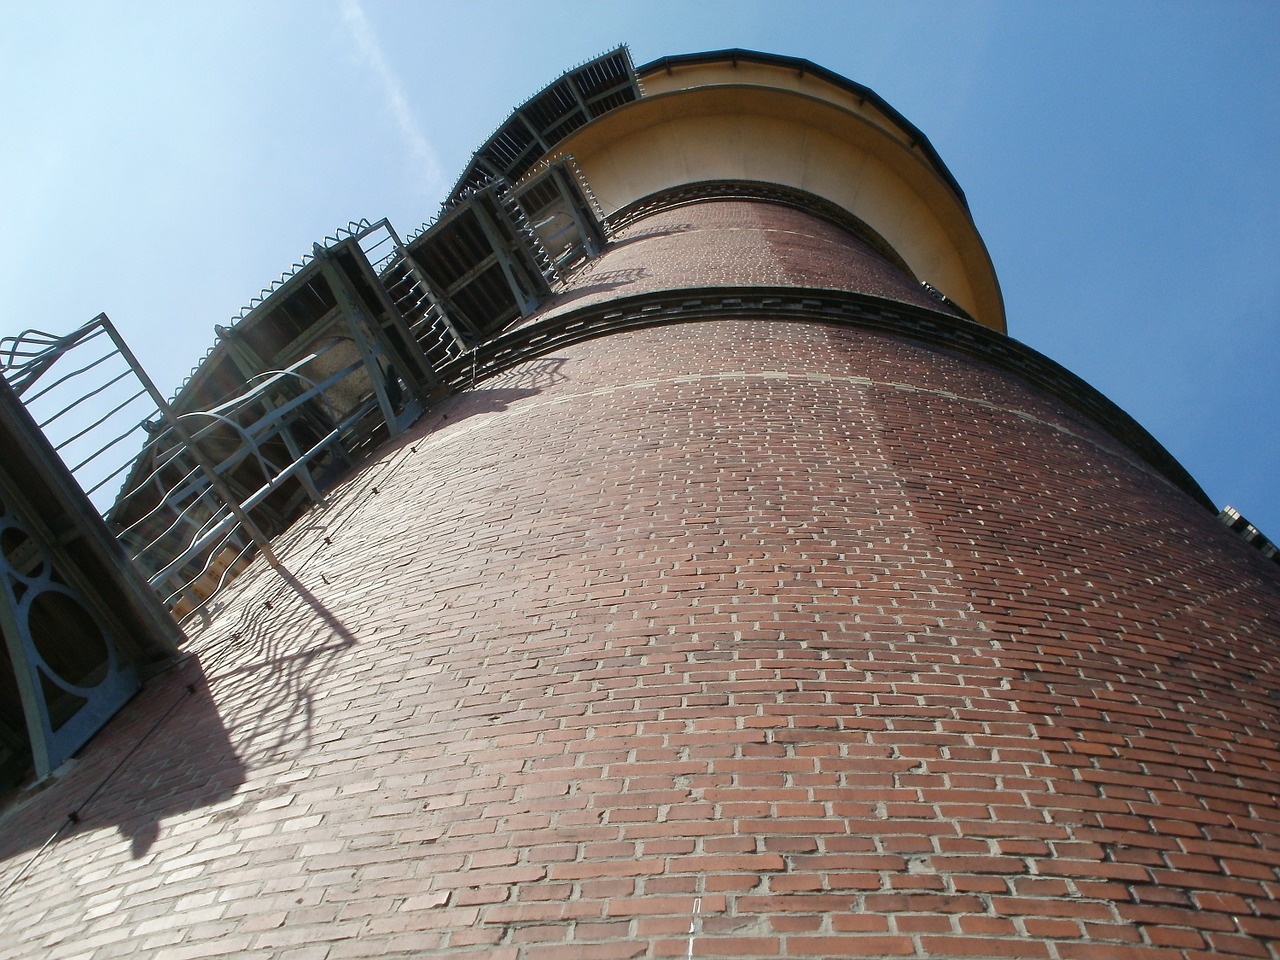 water tower schwetzingen germany free photo